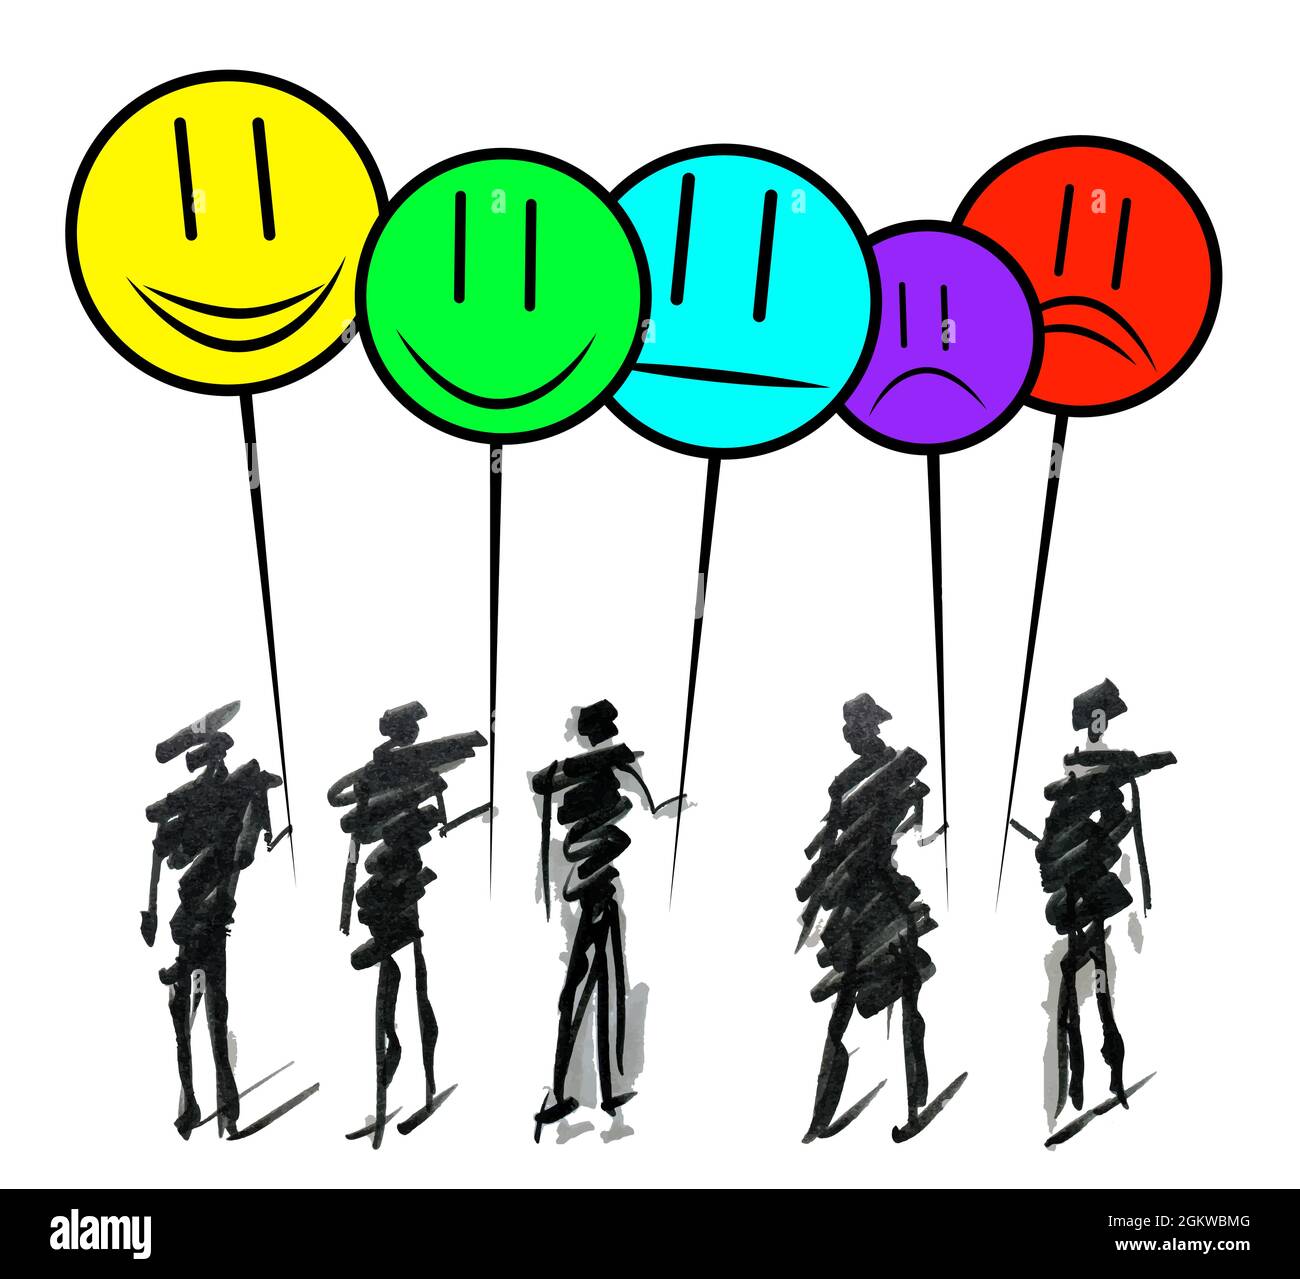 Handgezeichnete Doodle Linie Kunst Cartoon Design Charakter Gruppe von Menschen mit Smilies emoji zu zeigen positive, negative und neutrale Zufriedenheit Bewertung. Stock Vektor